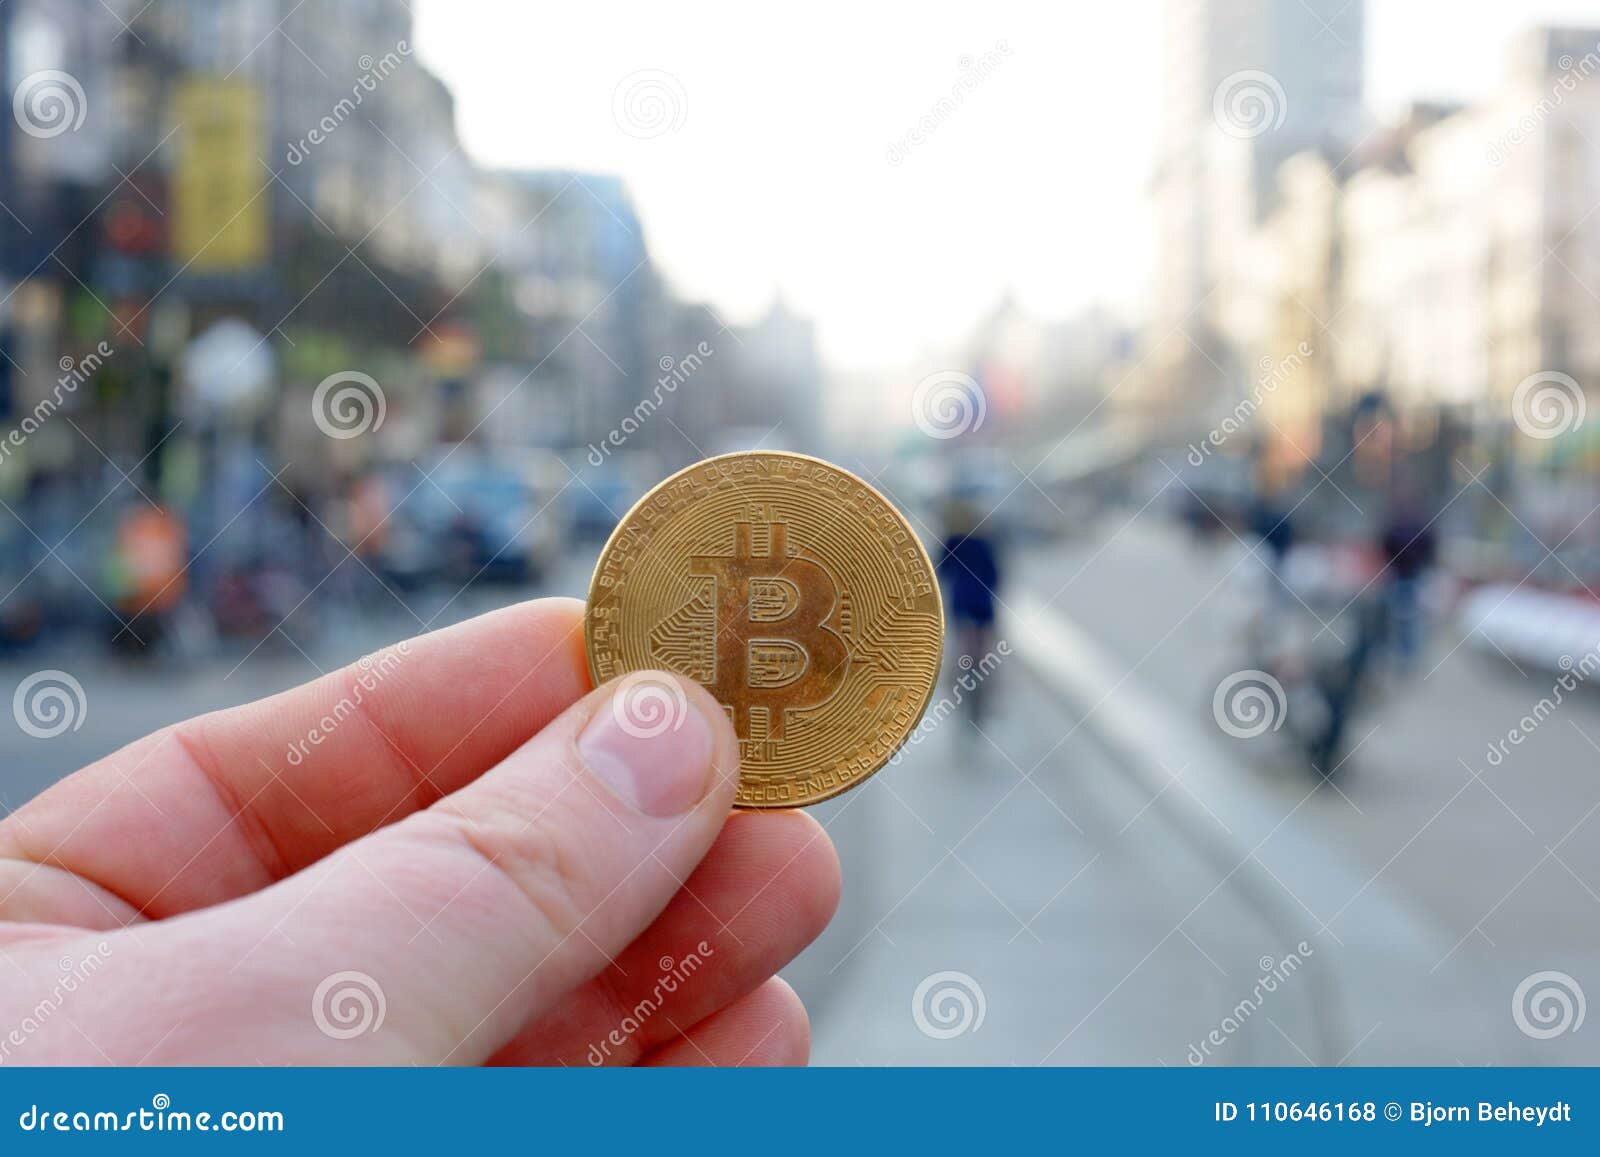 Bitcoin rus майнинг 7970 2022